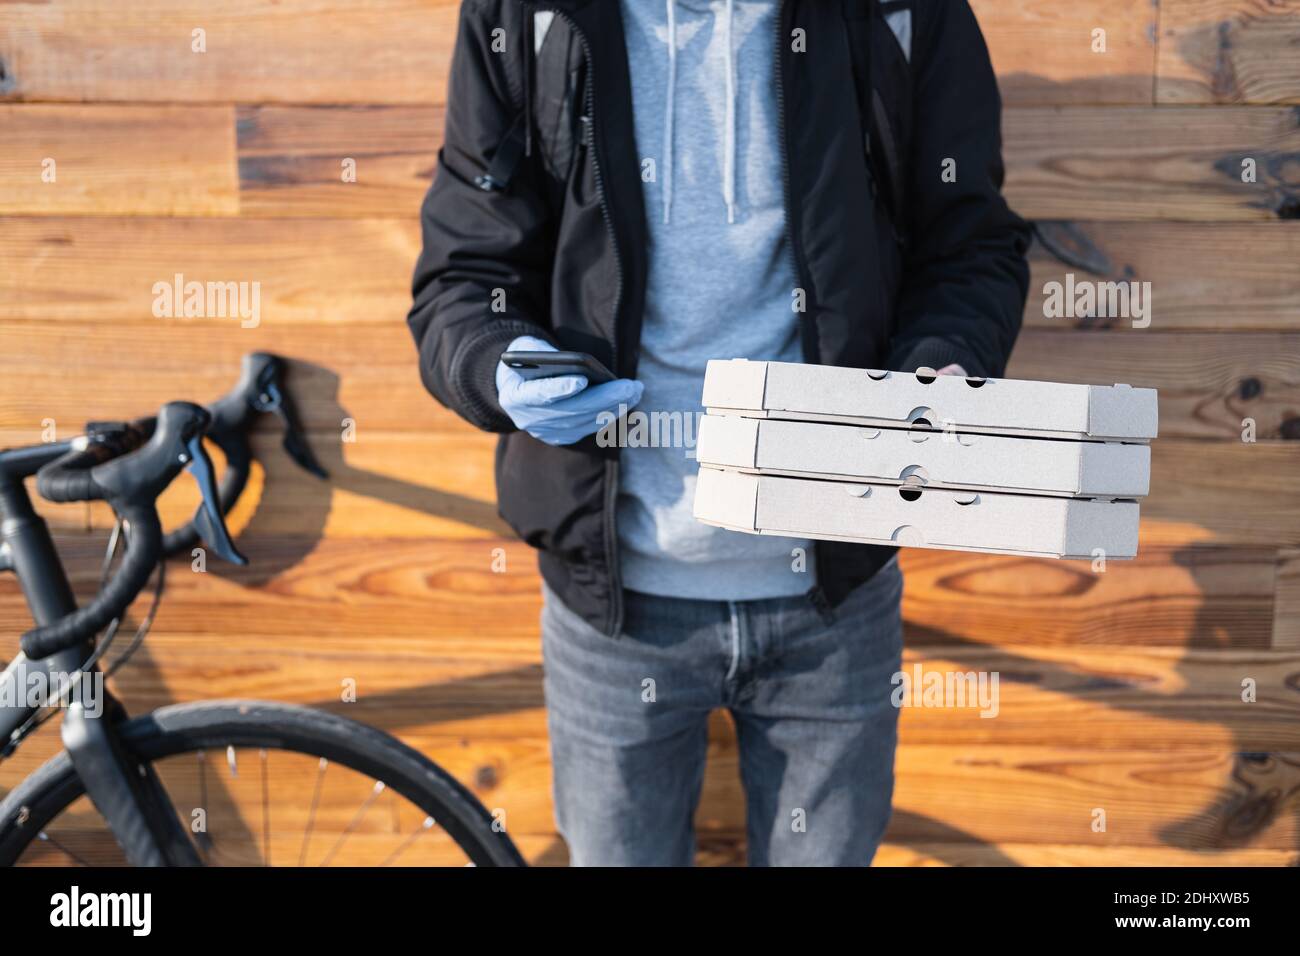 La persona encargada de la entrega junto a una bicicleta tiene cajas de  pizza y un teléfono. Trabajo como mensajero, profesión de mensajero de  bicicleta, concepto de trabajo a tiempo parcial Fotografía